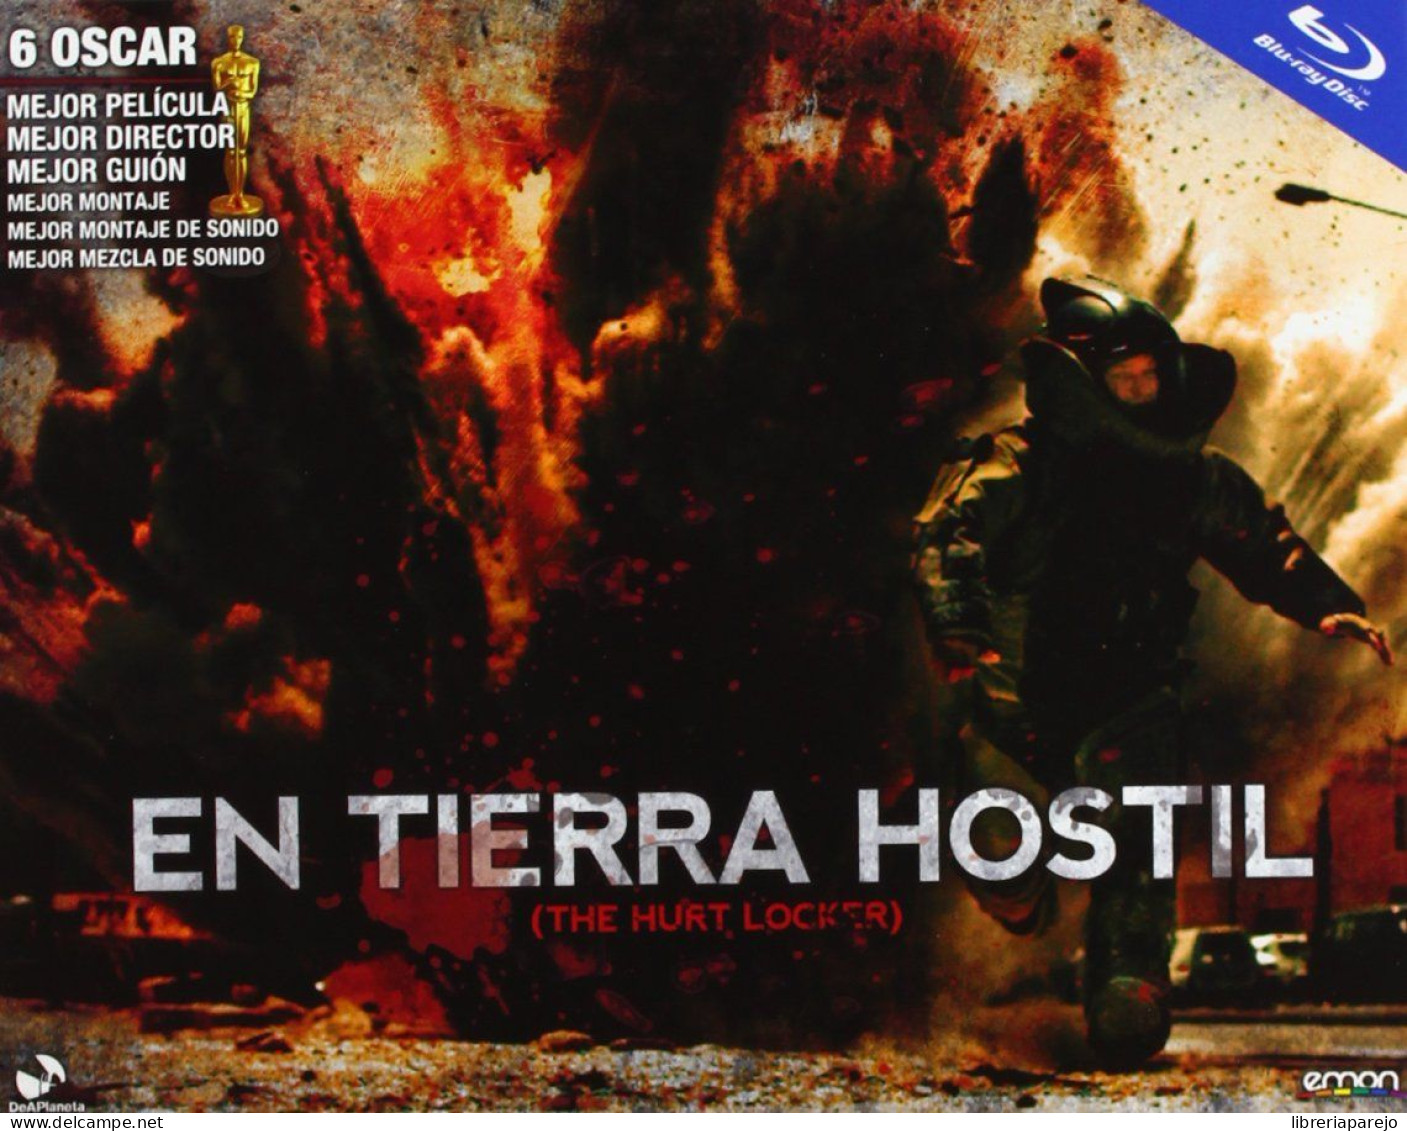 En Tierra Hostil Blu Ray Edicion Horizontal Nuevo Precintado - Autres Formats